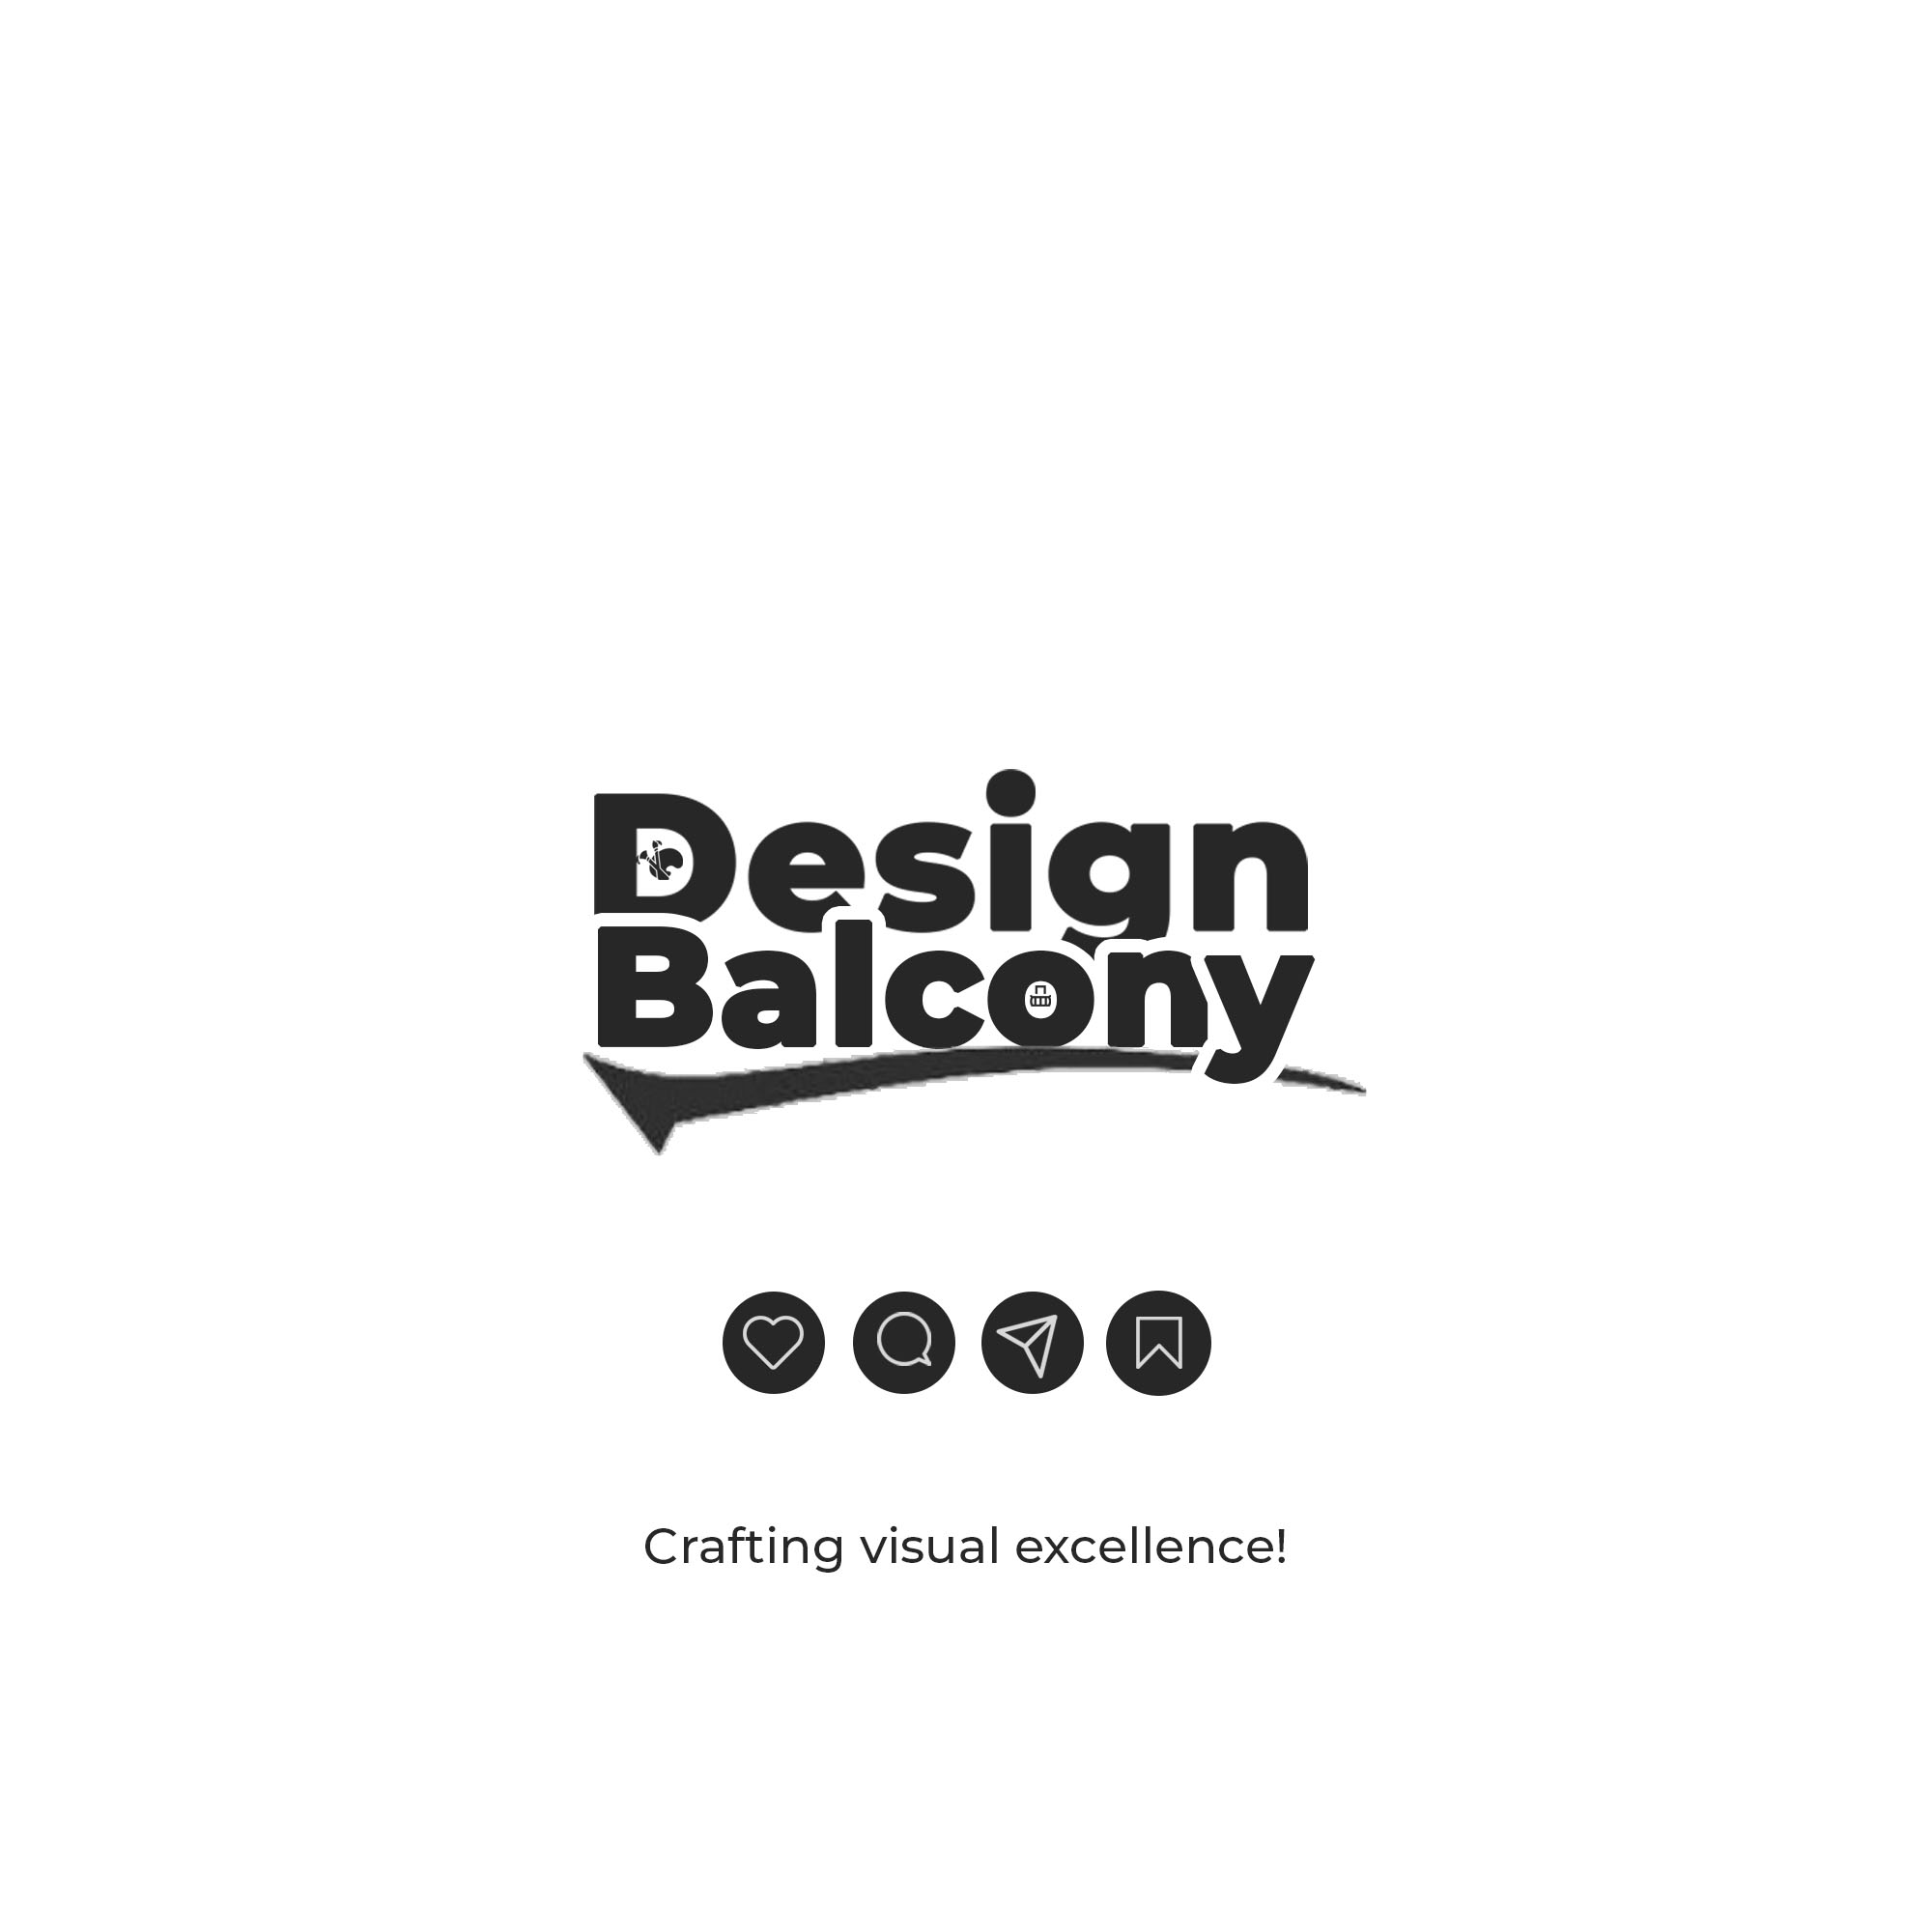 Design balcony